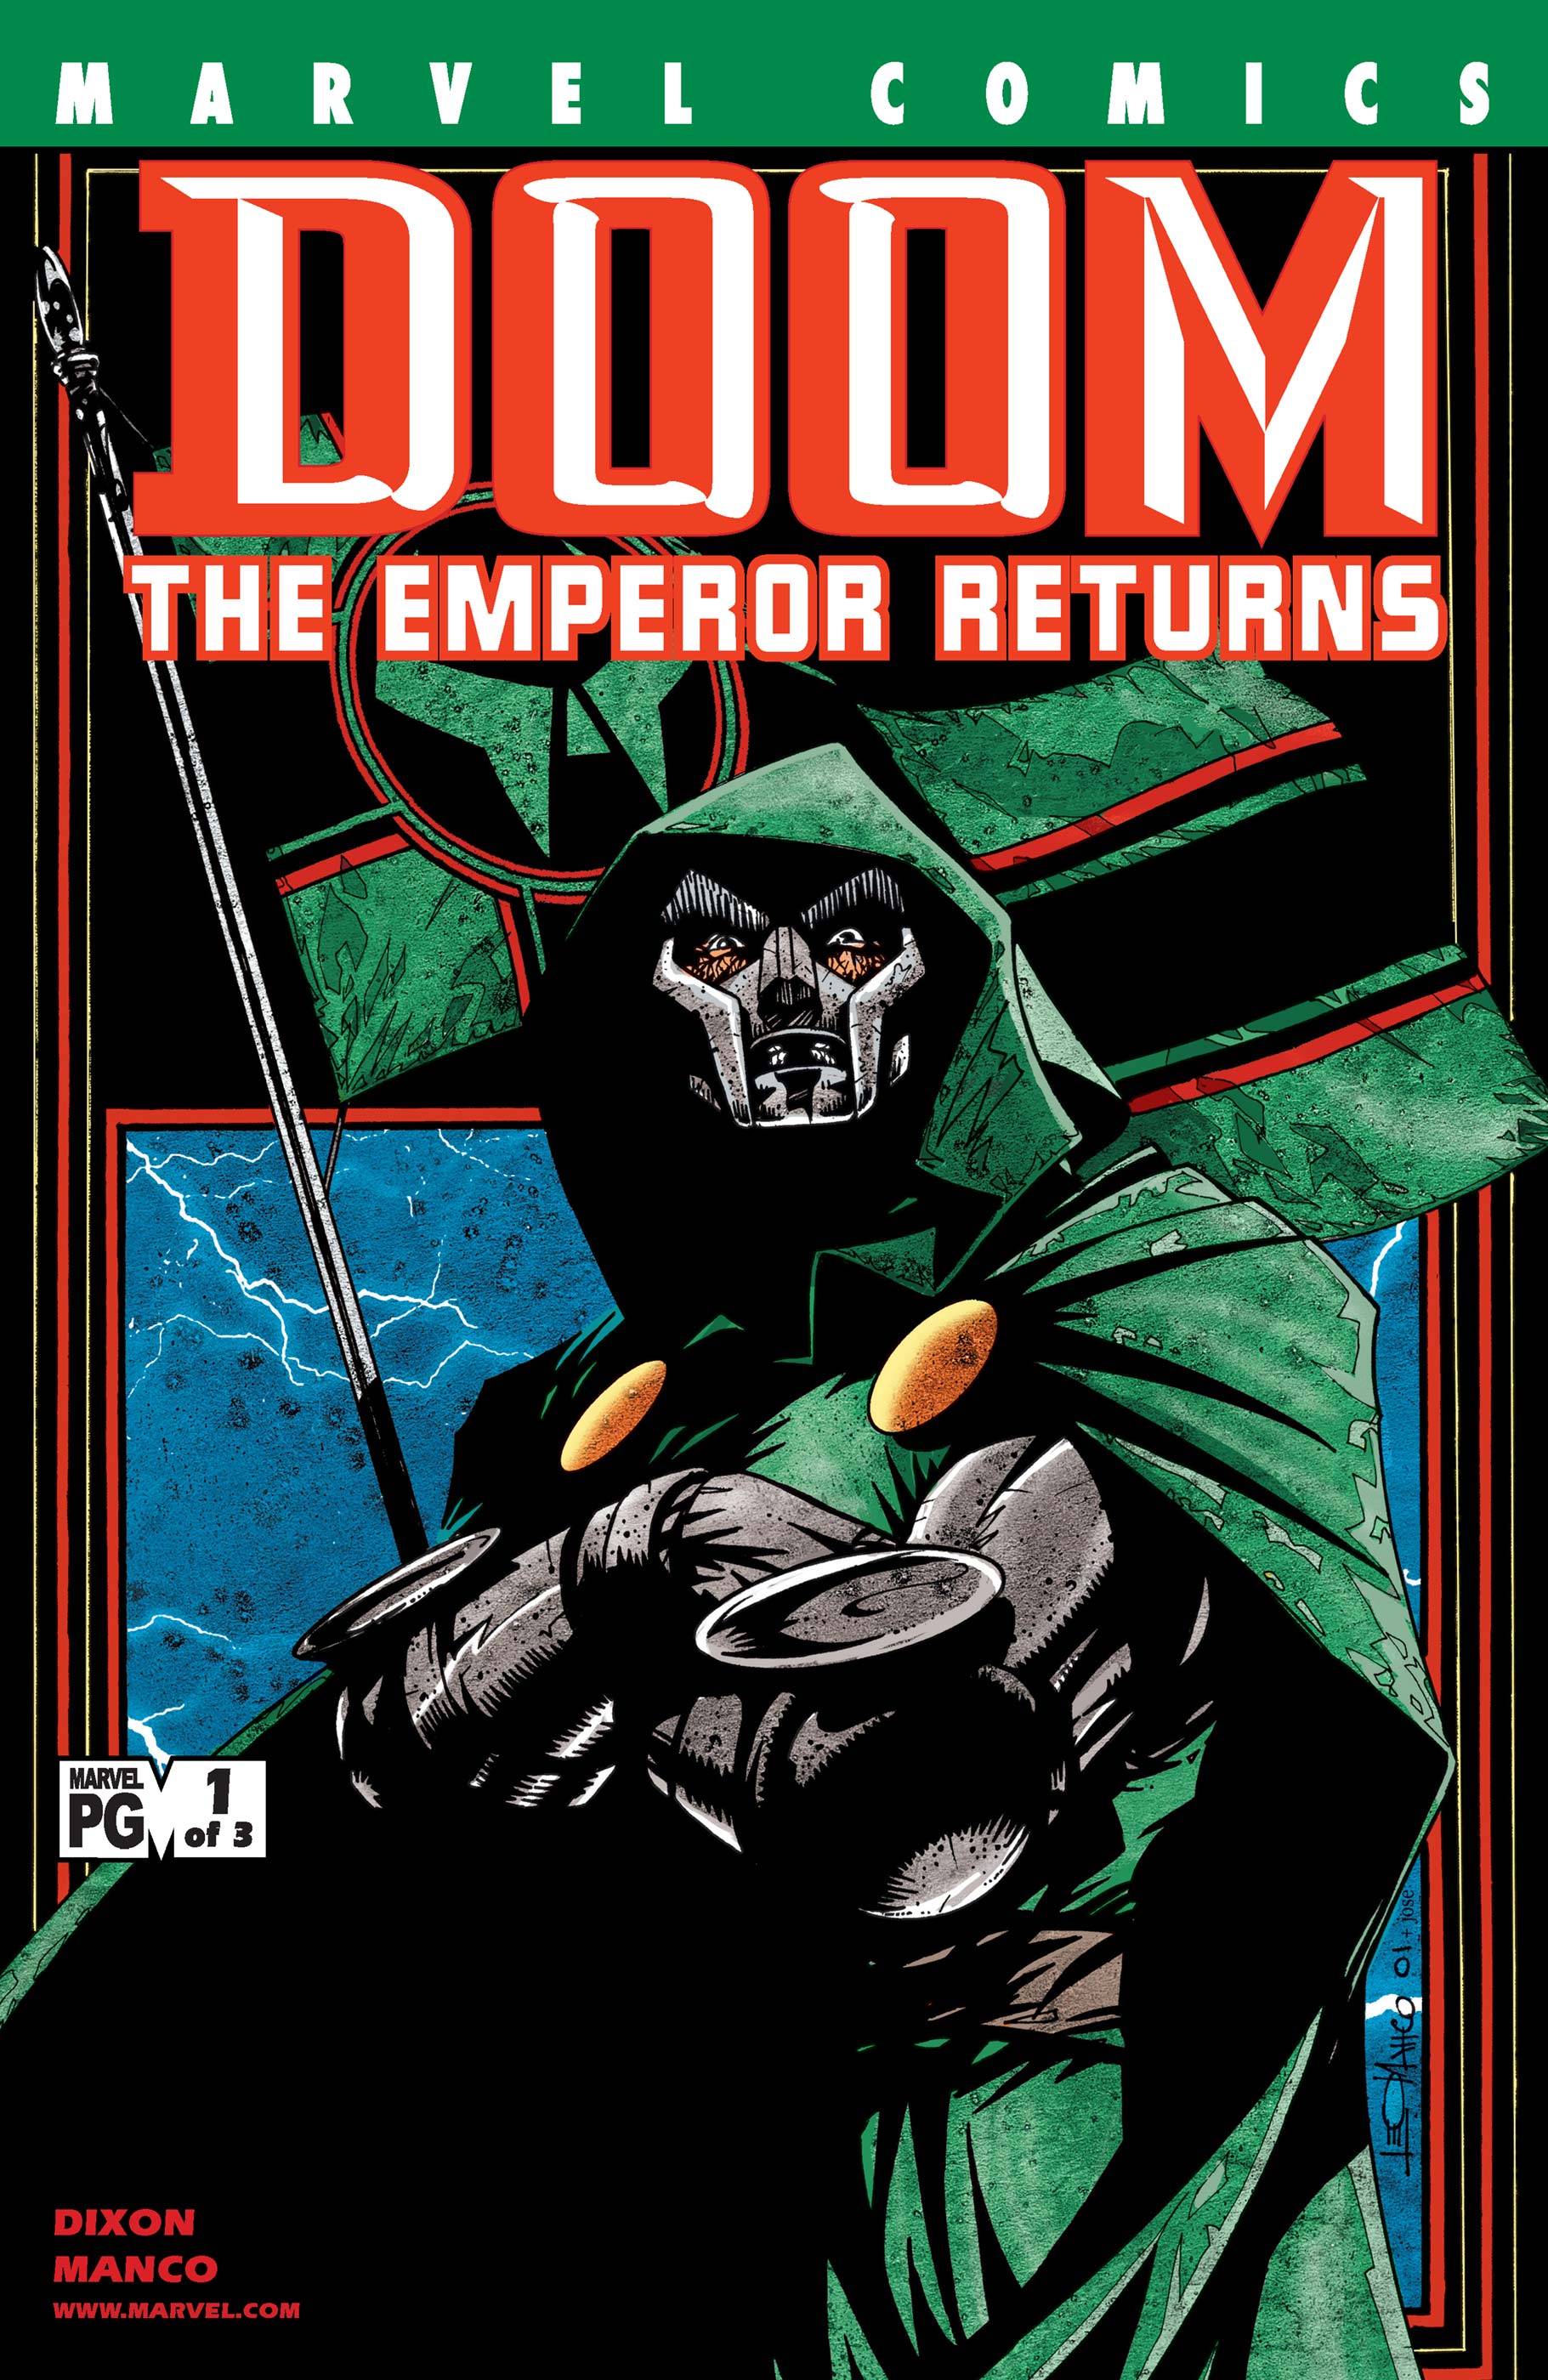 Doom: The Emperor Returns (2002) #1